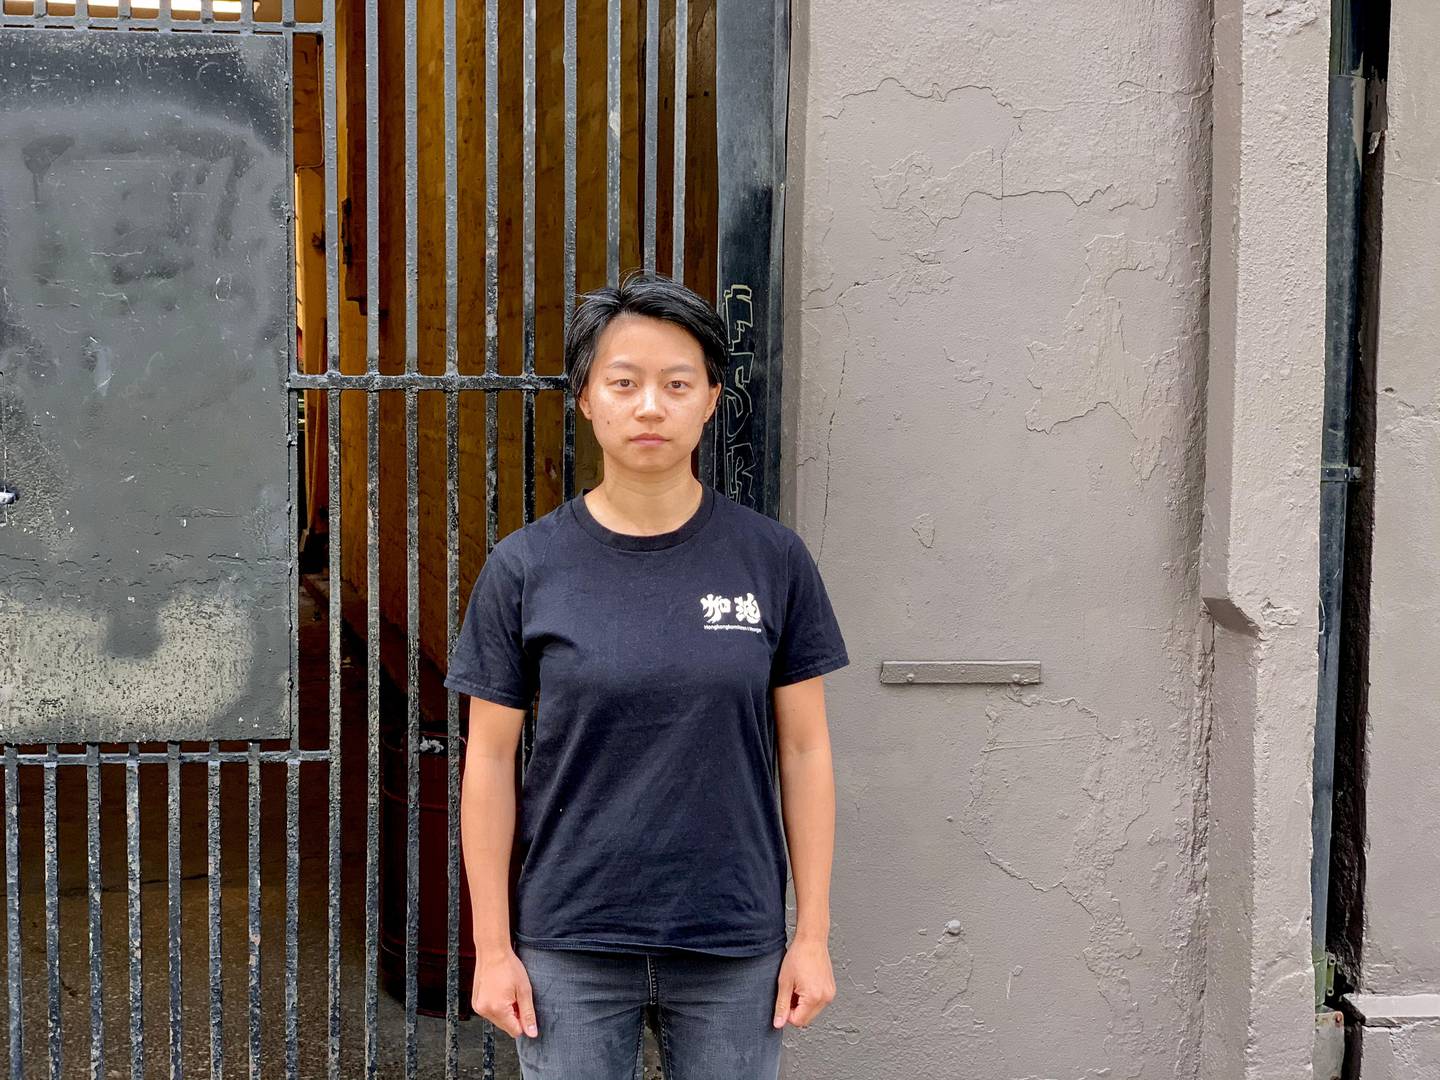 Jessica Chiu (30) er hongkonger bosatt i Norge. Som leder av den norske Hongkong-komiteen arrangerte hun tirsdag en demonstrasjon utenfor den kinesiske ambassaden i Oslo, mot den nye sikkerhetsloven. Foto: Sunniva Bjerkaas